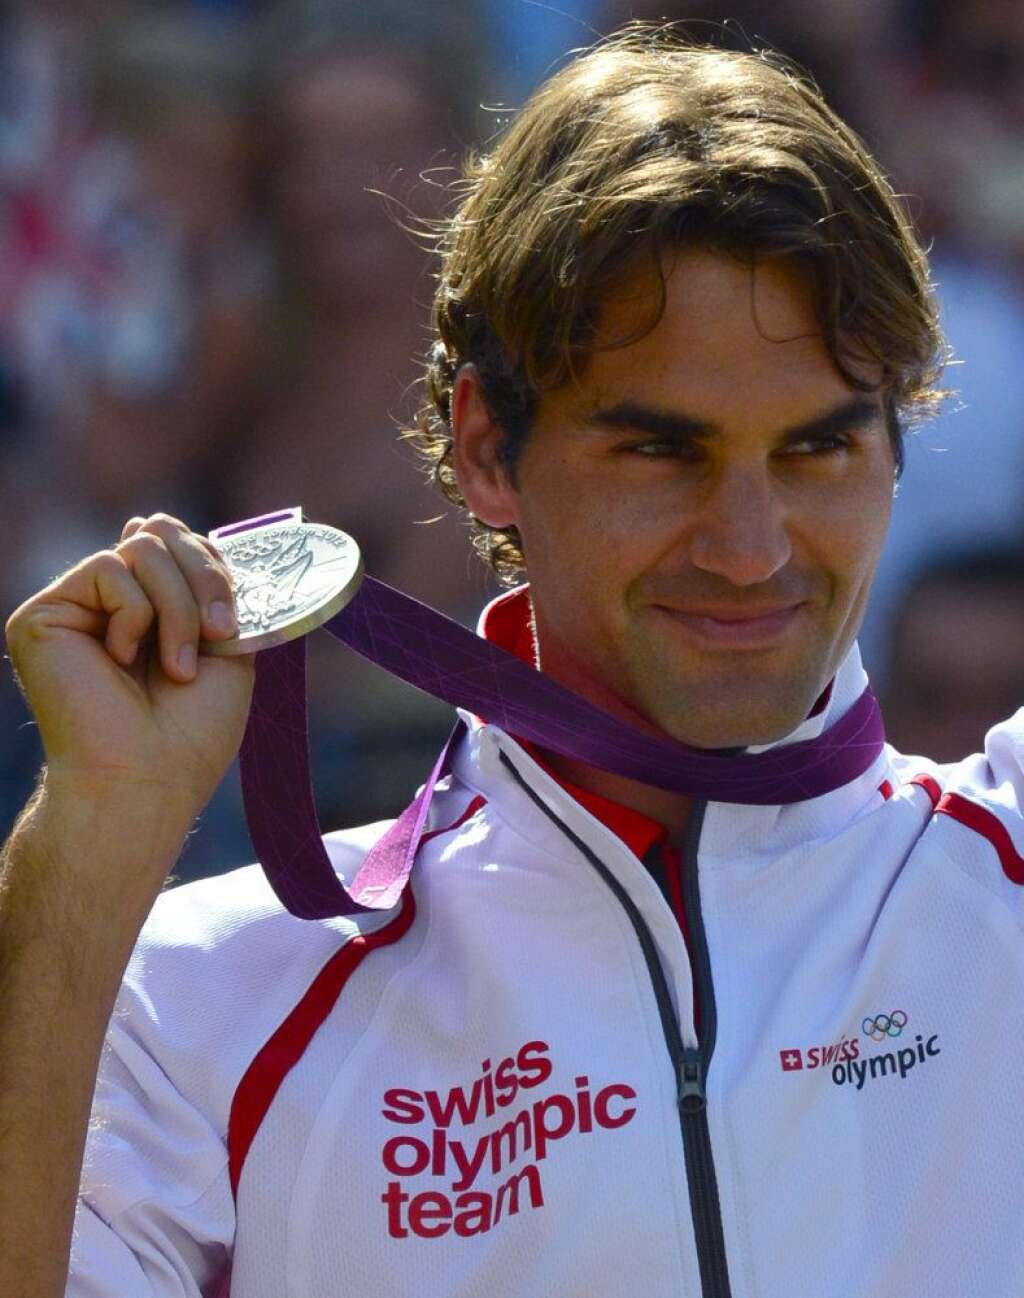 1. Roger Federer - 54.3 millions de dollars - Roger Federer, numéro 1 mondial, a gagné le tournoi de Wimbledon pour la septième fois en juillet dernier. Ses principaux sponsors : Crédit Suisse, Gilette, Lindt, Mercedes Benz, Nike, Rolex, Wilson.